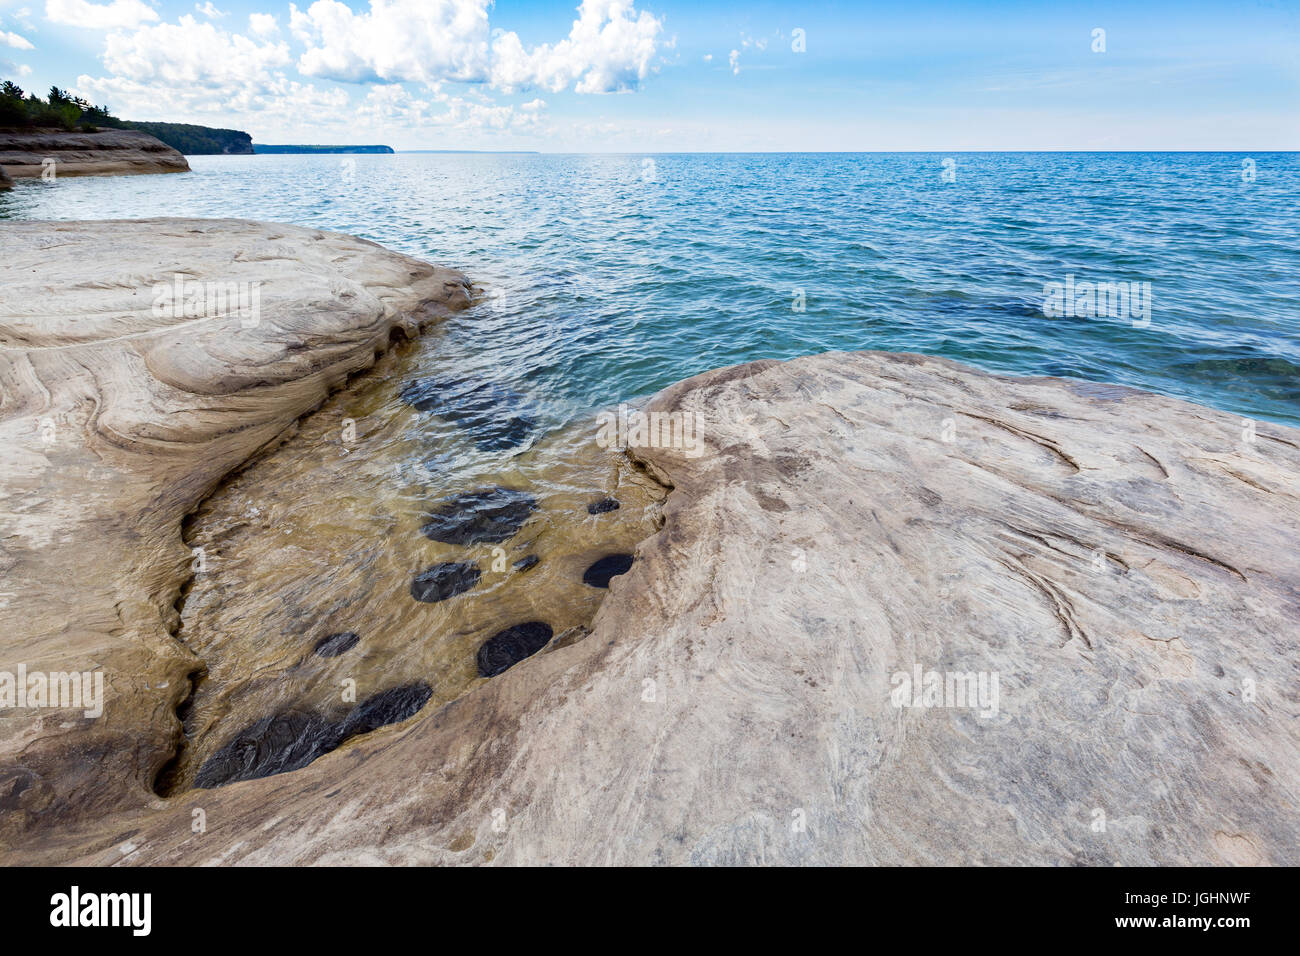 "Le Calette' sul lago Superiore al Pictured Rocks National Lakeshore, situato in Munising Michigan. Le grotte sono parte del bacino di castoro area lacustre. Foto Stock